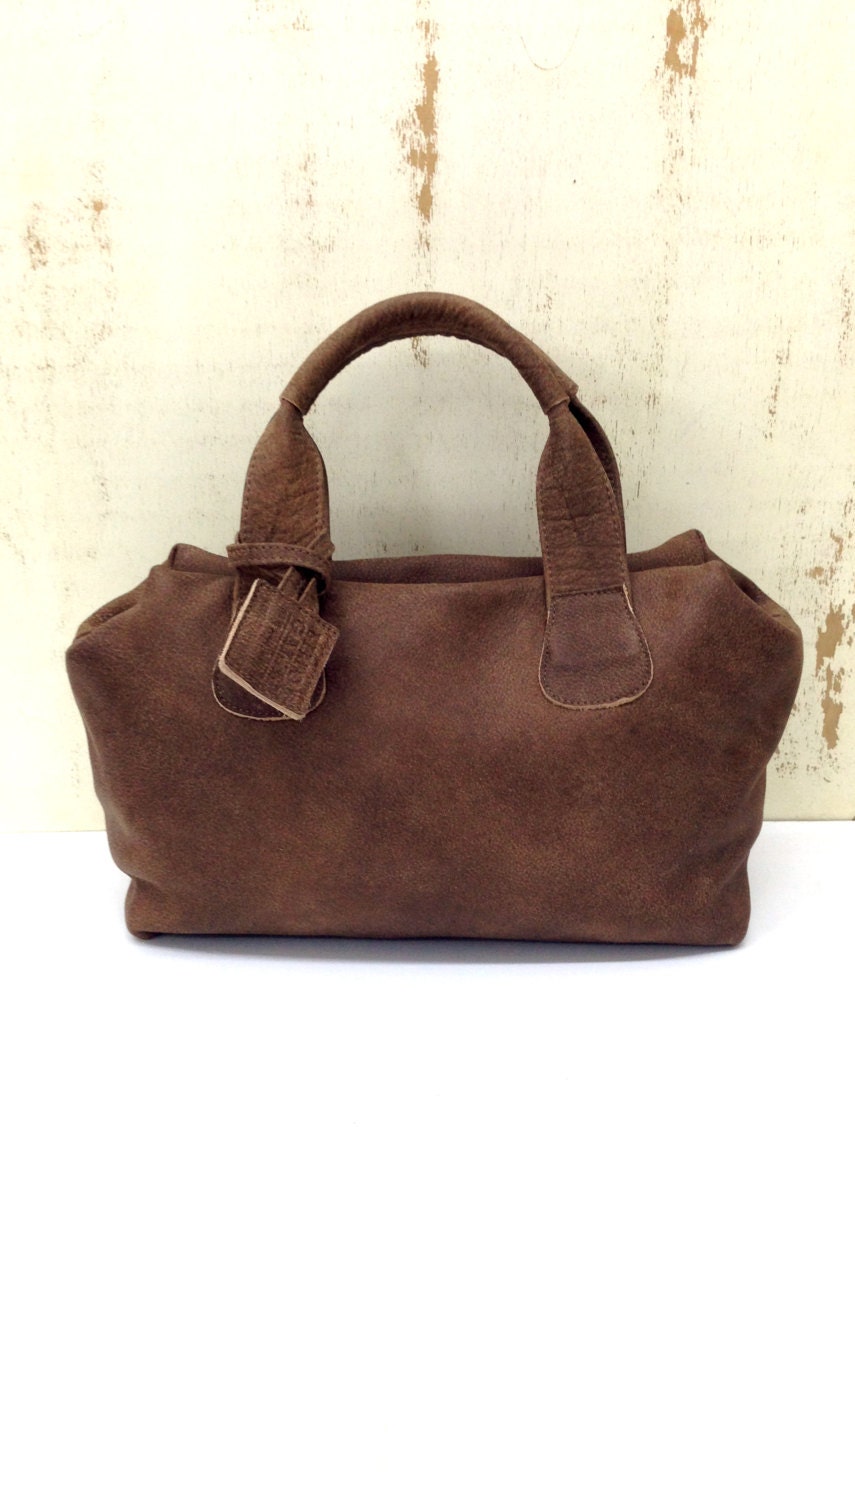 Sale Brown leather handbag purse Small bag Top handles bag